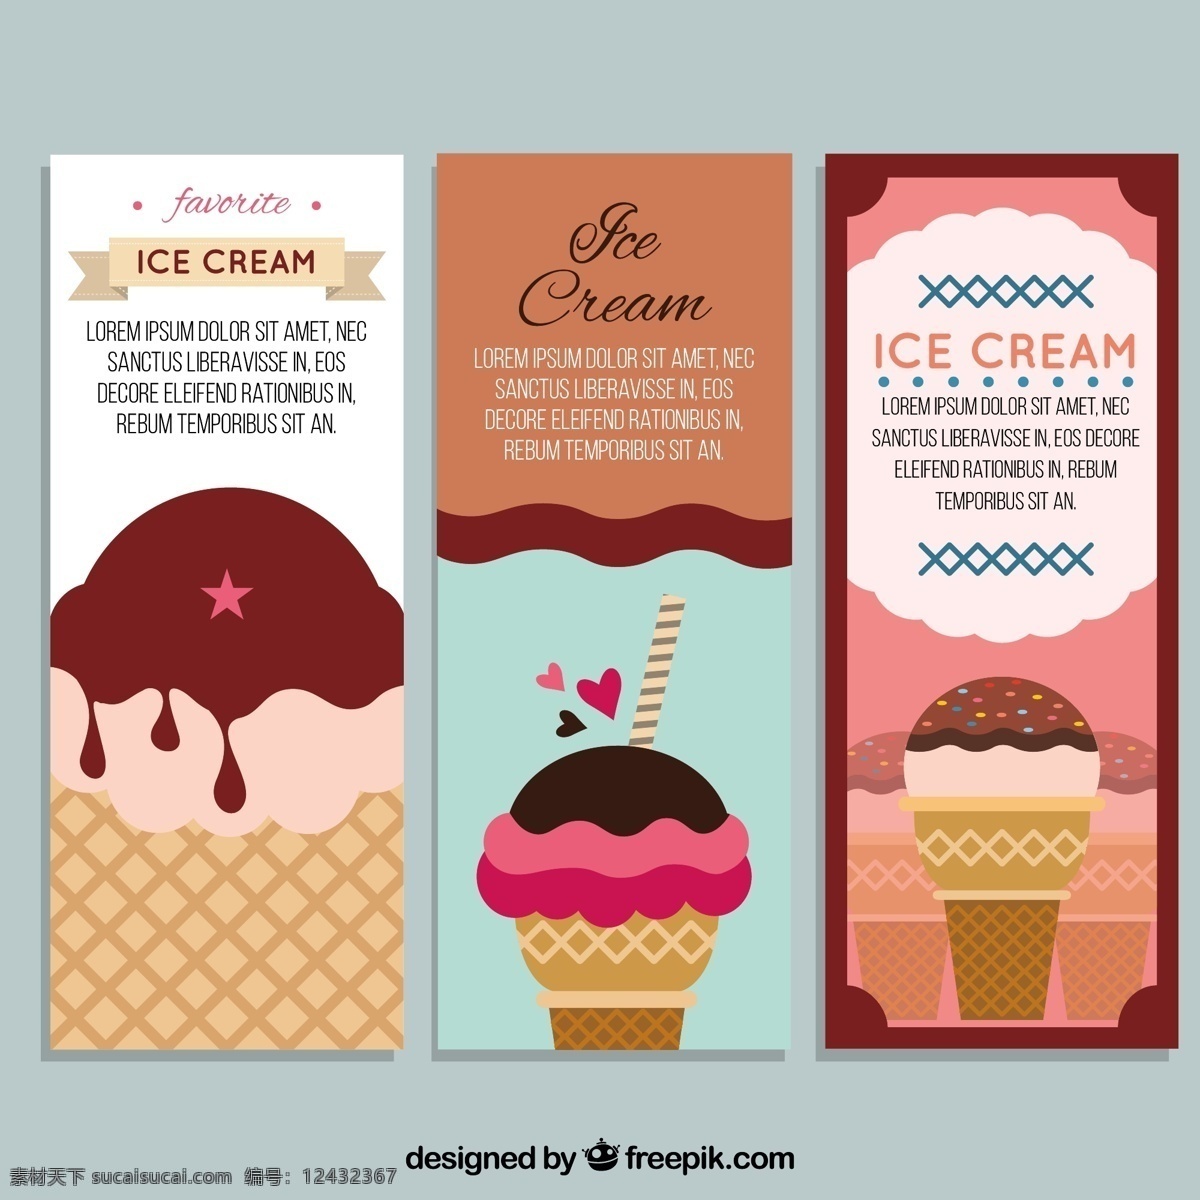 冰淇淋 插图 彩色 卡片 几个 冰淇淋插图 彩色卡片